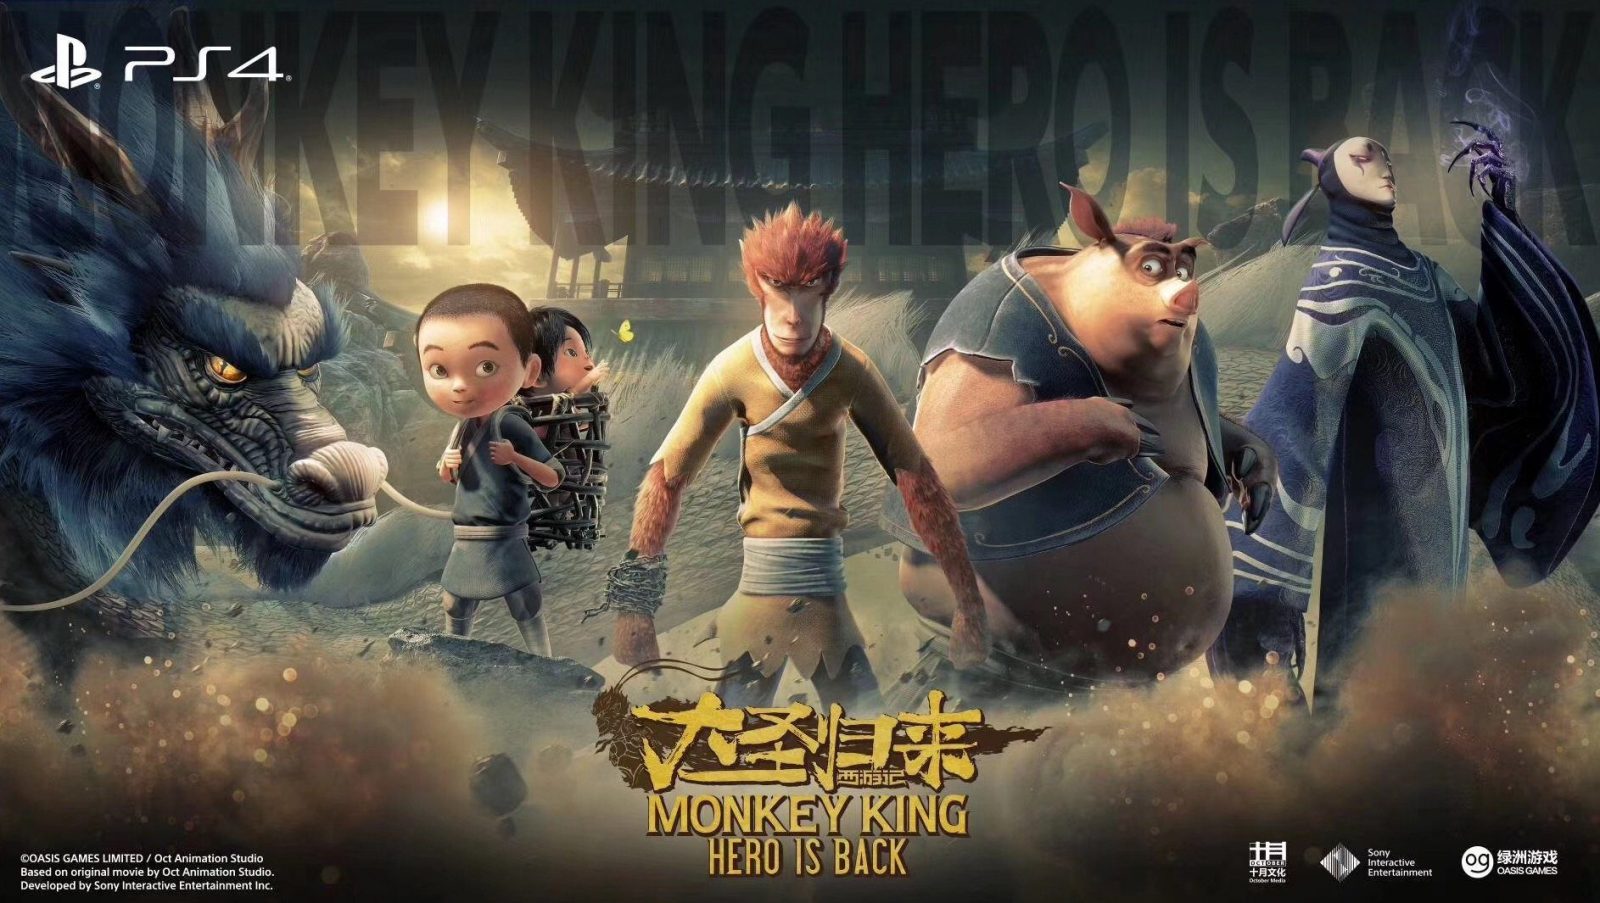 The Monkey King Animation